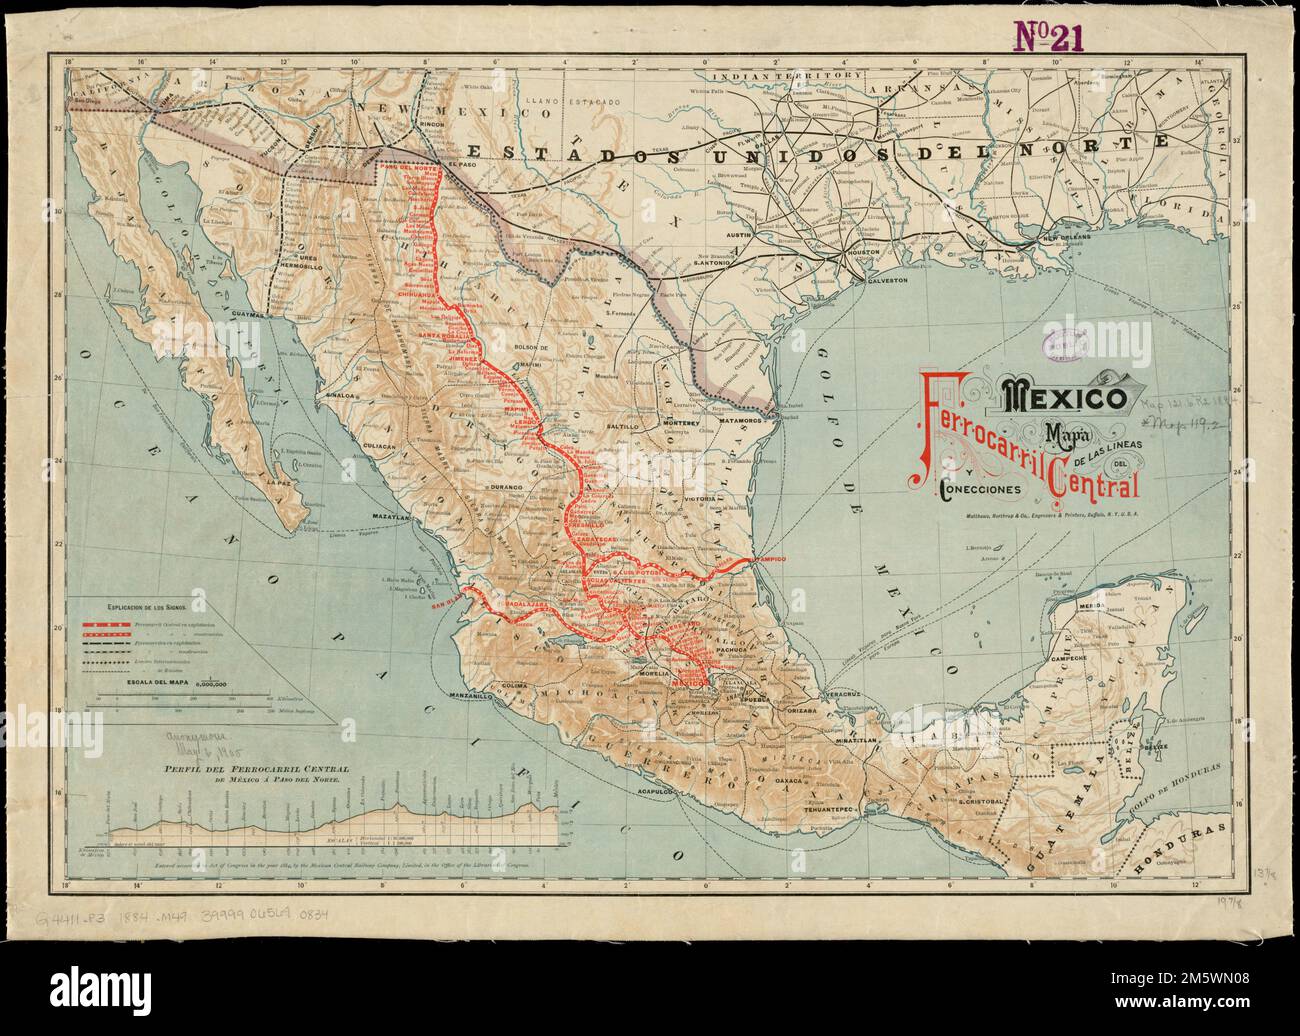 Mexico, mapa de las lineas del Ferrocarril Central Mexicano y conecciones. Relief shown by hachures. Prime meridian: Mexico City. Includes elevation profile.... , Mexico Stock Photo